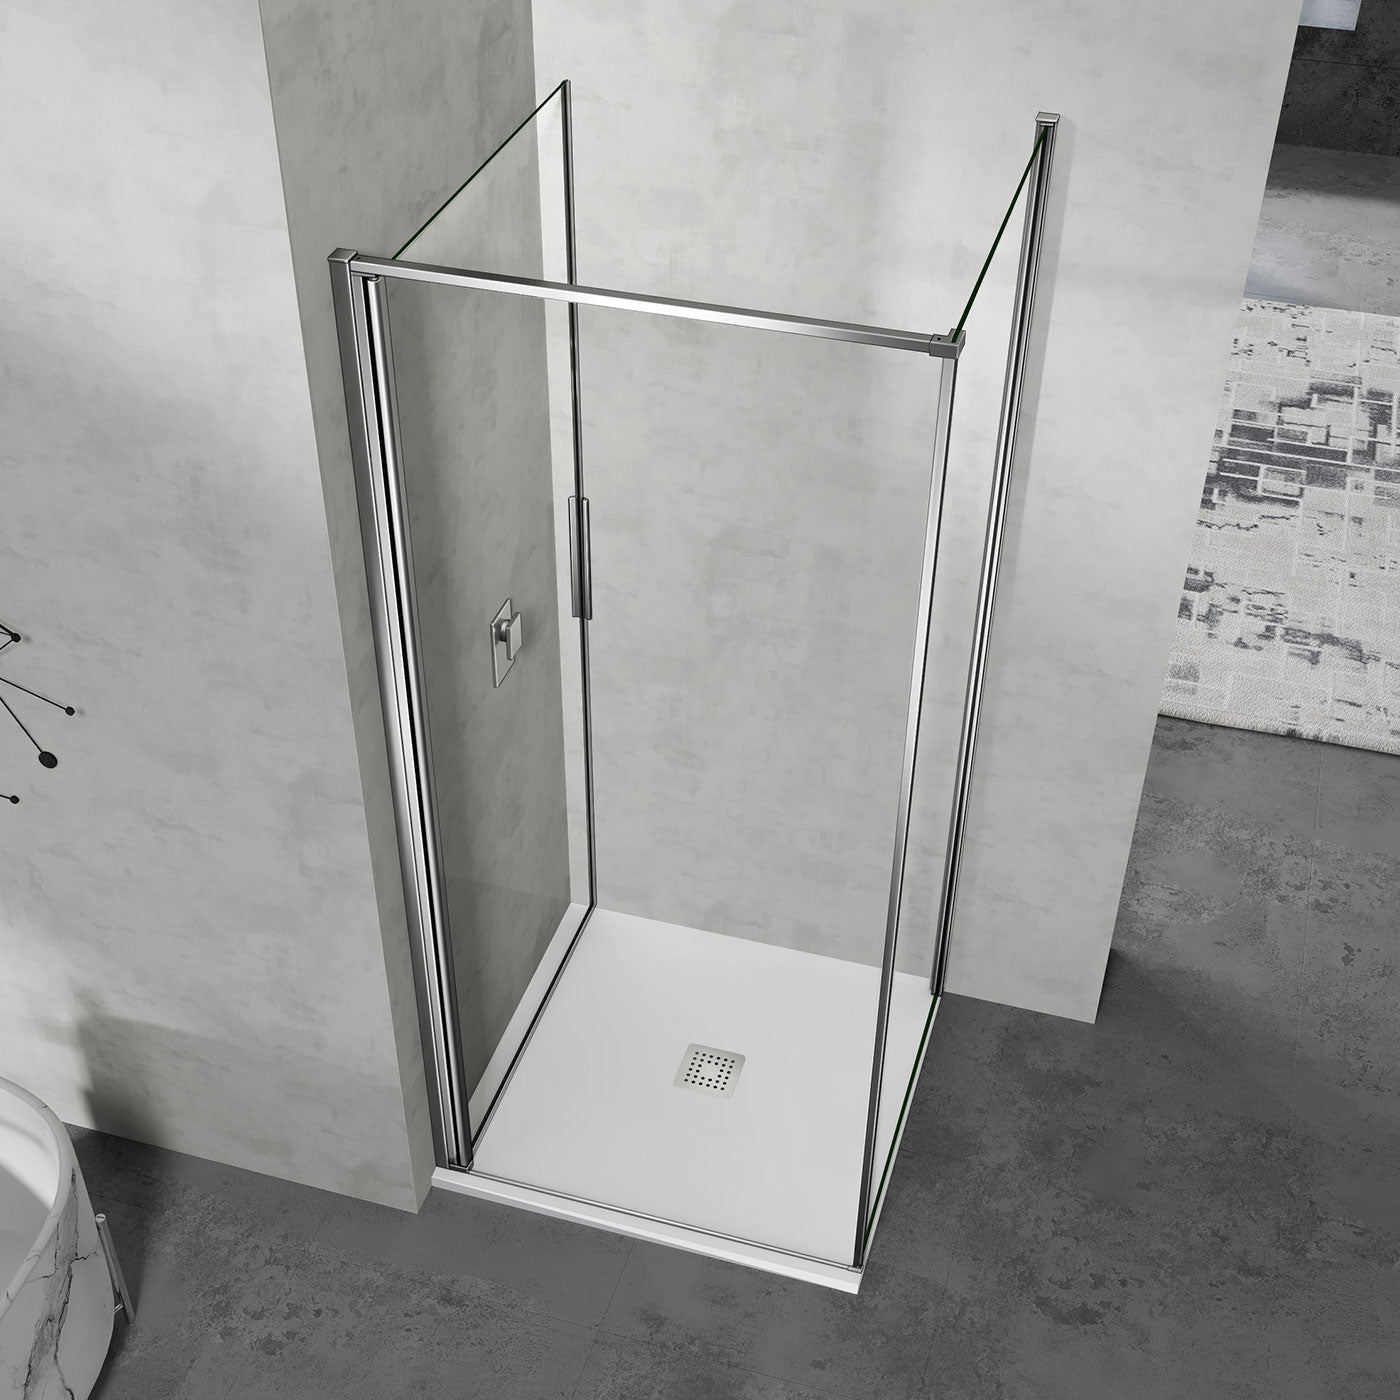 grandverre cabine de douche pivotante ouverture vers l'intérieur verre 6mm profilés aluminium chromé aspect inox 